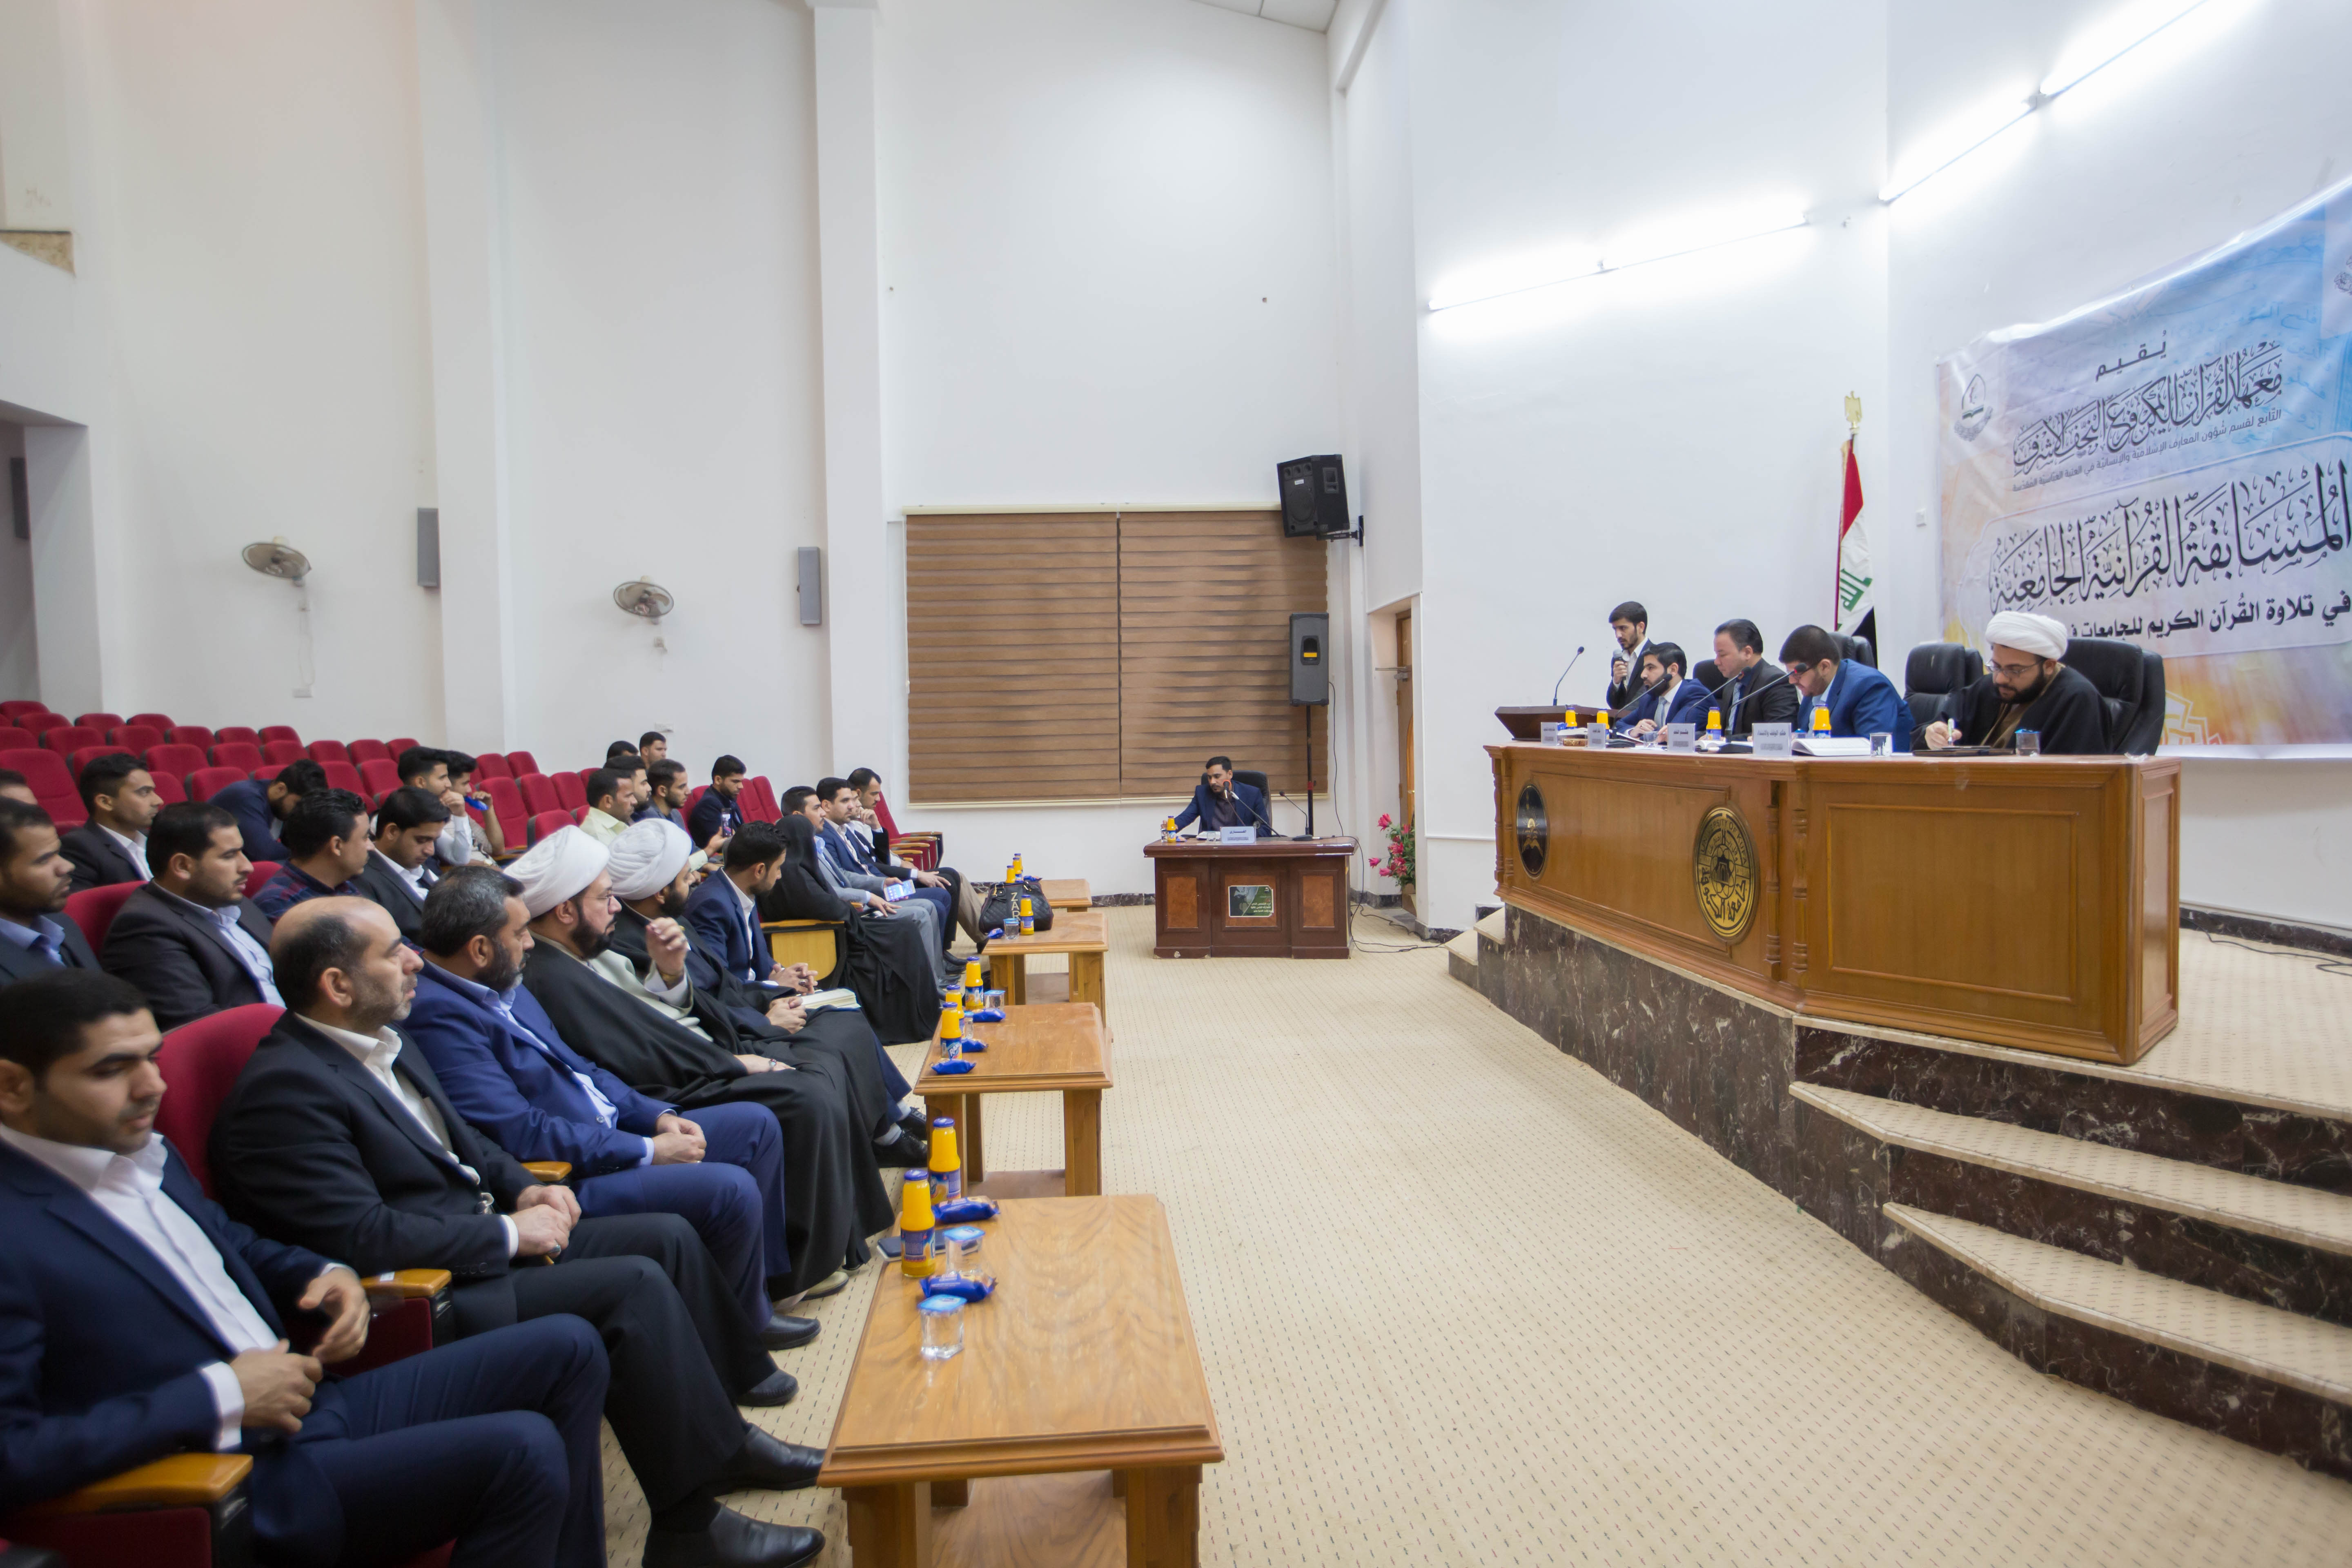 جامعة الكوفة تحتضن الحفل الختامي للمسابقة القرآنية الجامعية